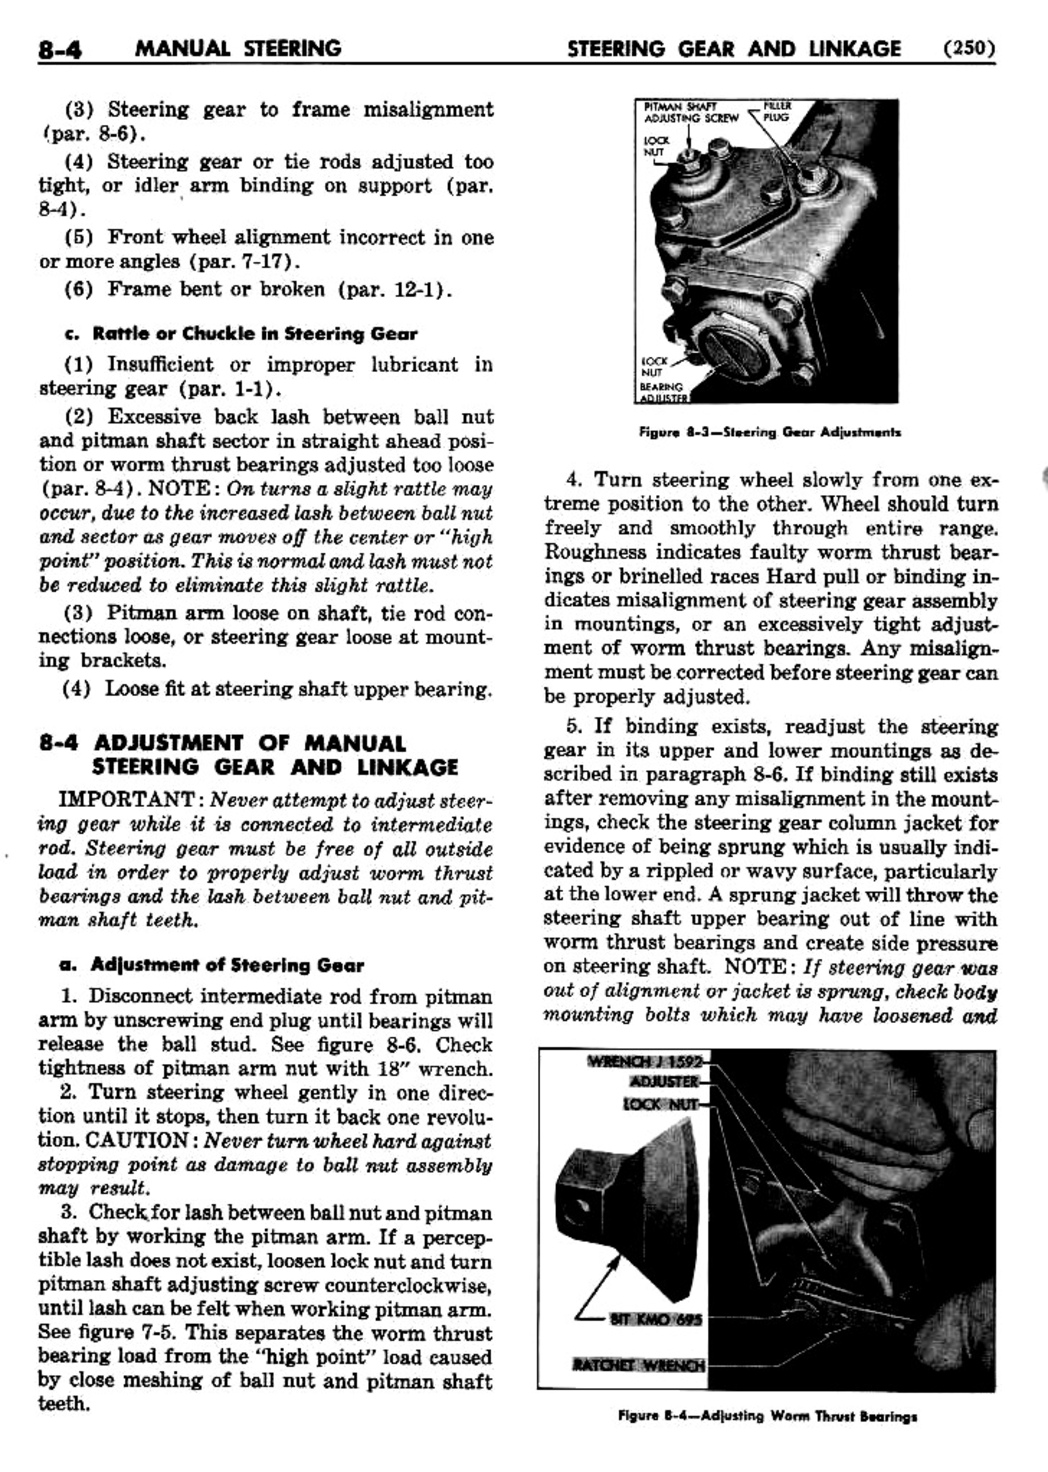 n_09 1955 Buick Shop Manual - Steering-004-004.jpg